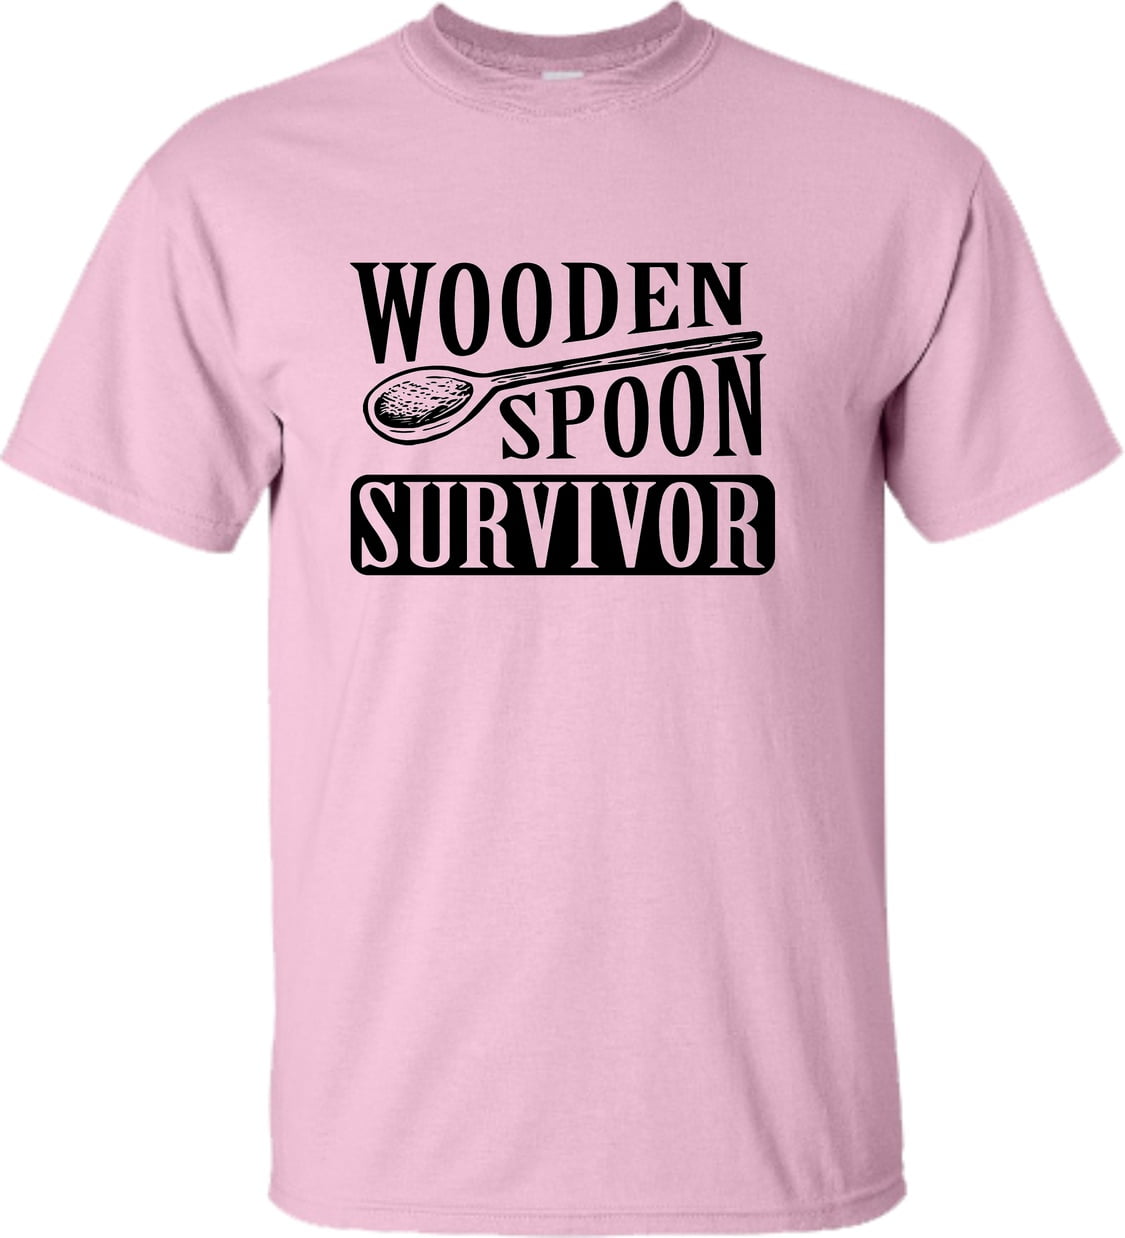 Adult Wooden Spoon Survivor Funny T-Shirt - Walmart.com